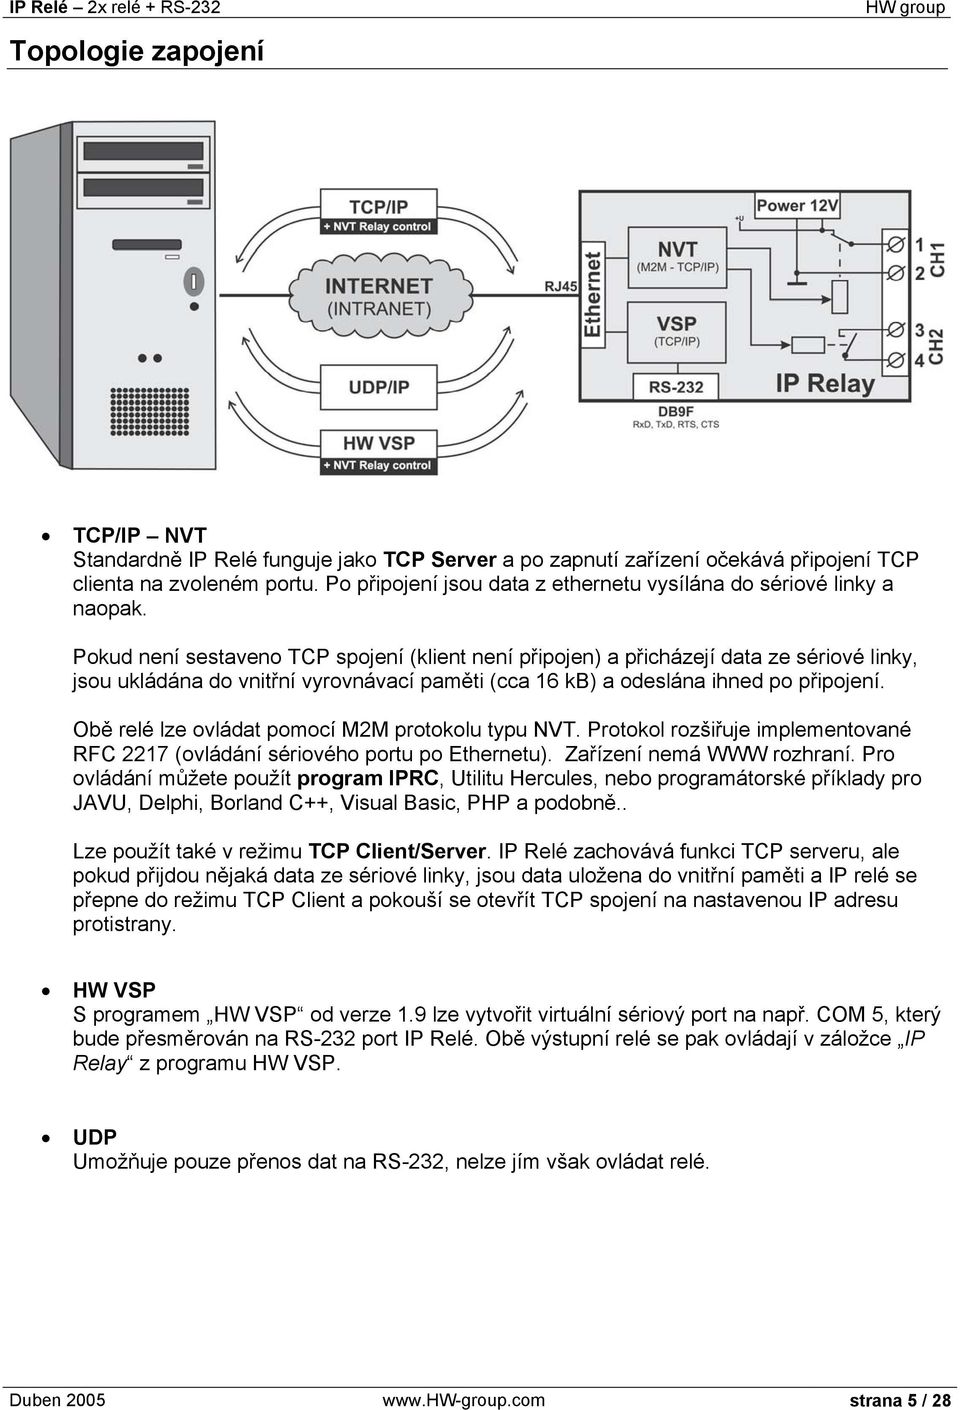 Pokud není sestaveno TCP spojení (klient není připojen) a přicházejí data ze sériové linky, jsou ukládána do vnitřní vyrovnávací paměti (cca 16 kb) a odeslána ihned po připojení.